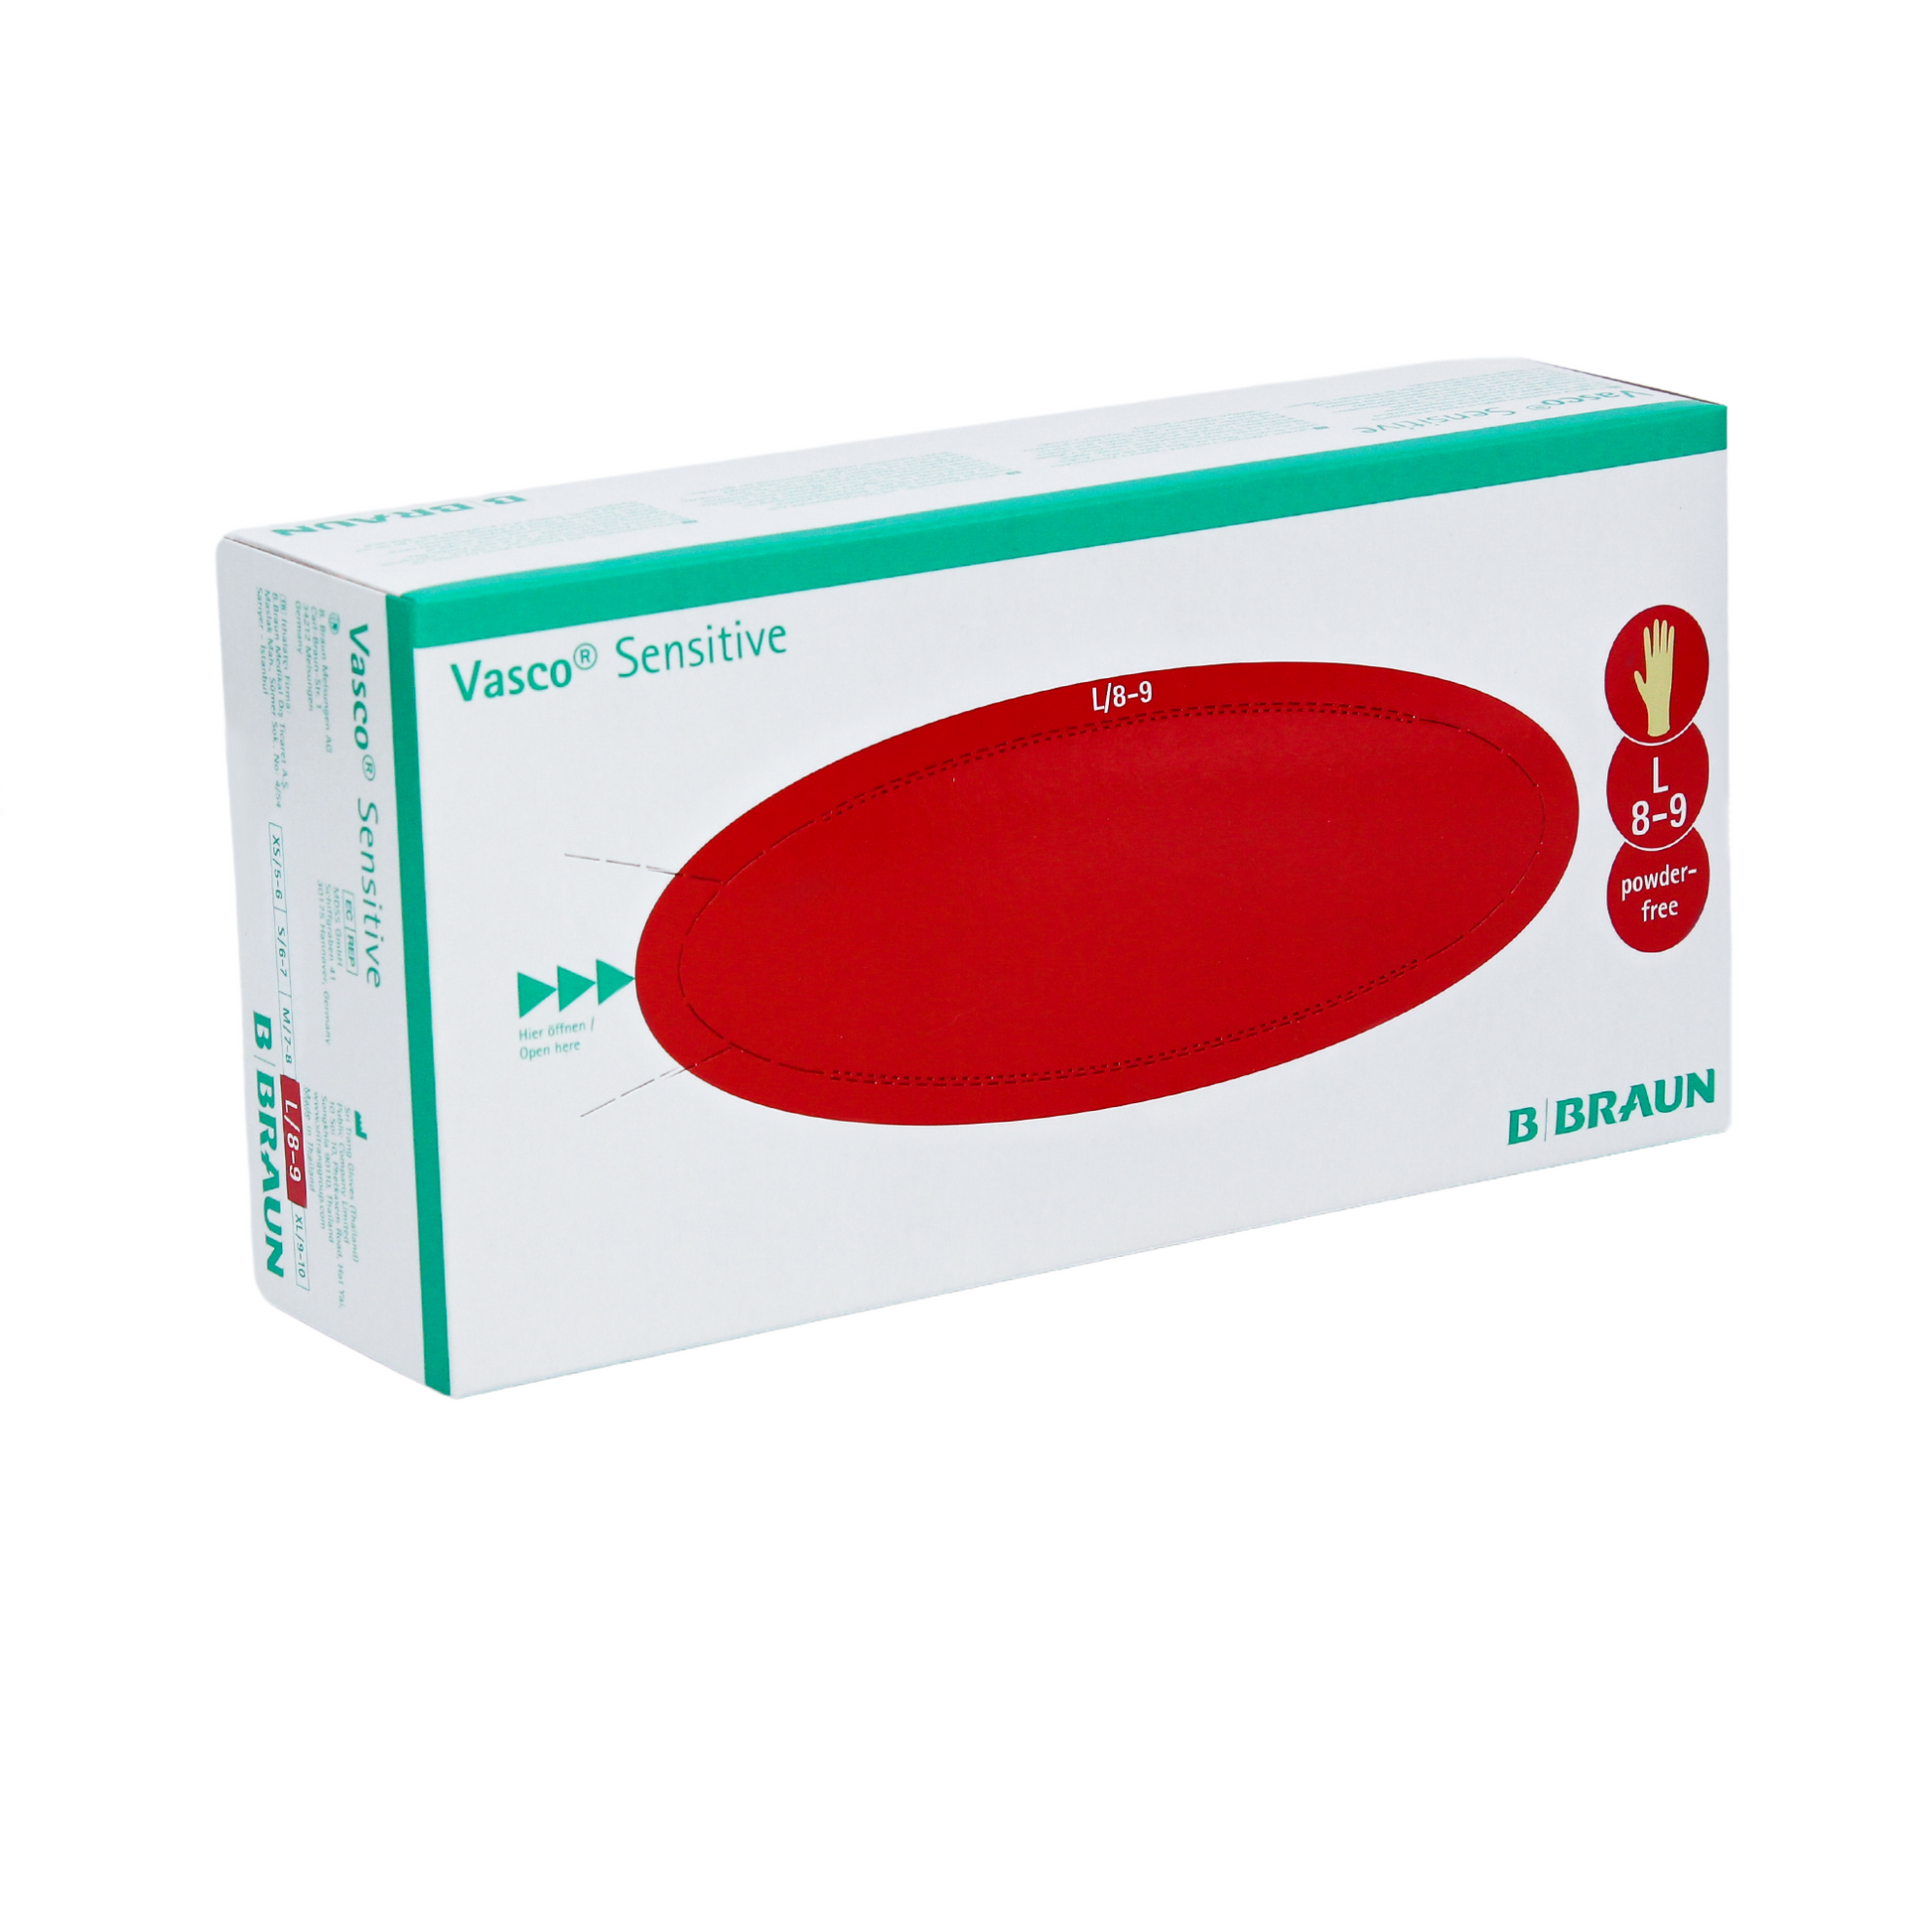 Eine Schachtel B. Braun Vasco® Sensitive Latex-Untersuchungshandschuhe von B. Braun Melsungen AG, Größe L (8-9), gekennzeichnet als puderfrei und hervorgehoben mit einer ovalen roten Grafik. Die Verpackung ist hauptsächlich weiß mit Grün.